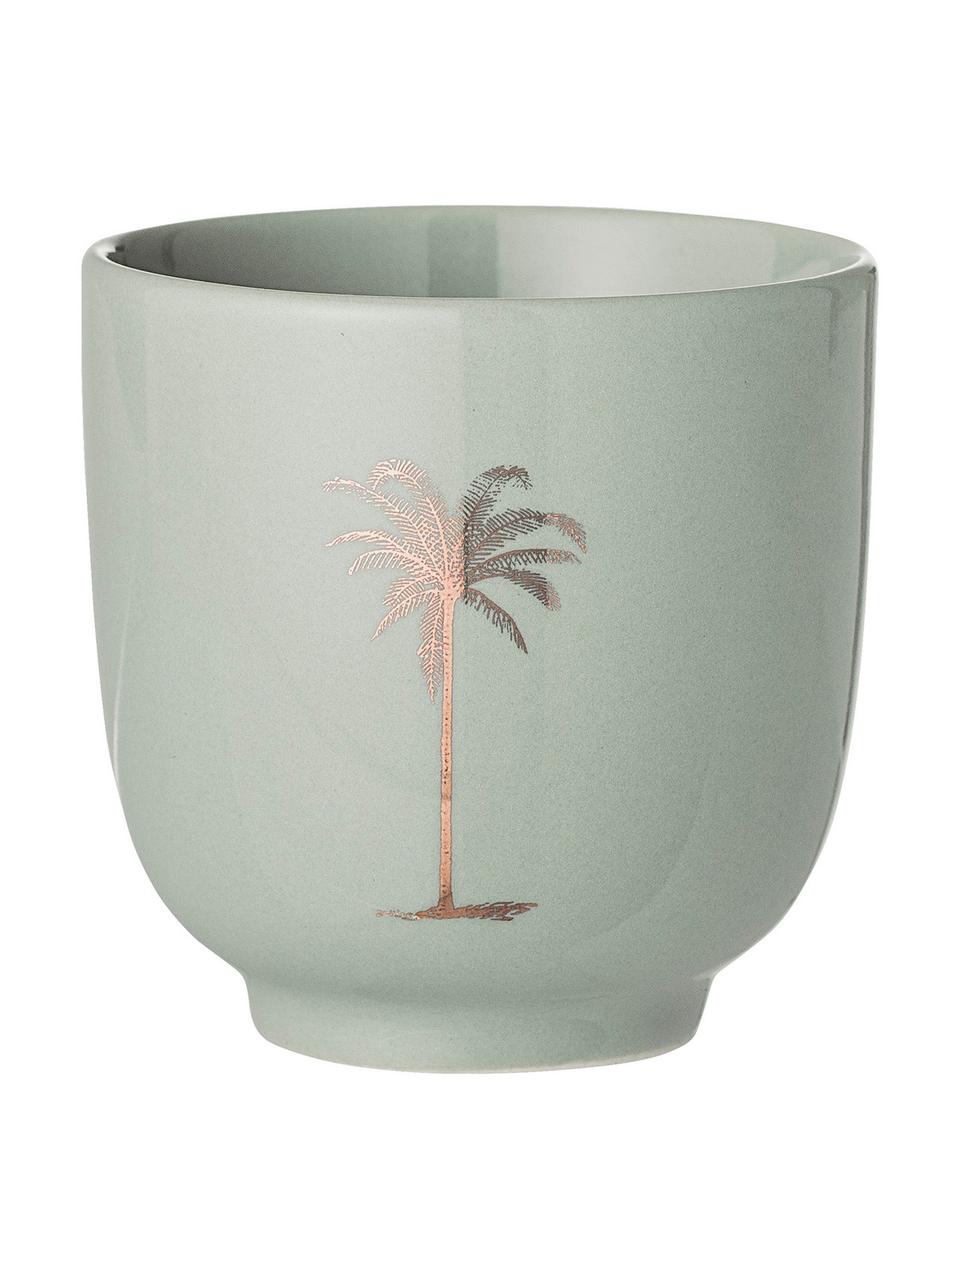 Beker Reese met palm motief, 2 stuks, Keramiek, Resedagroen, koperkleurig, Ø 7 x H 7 cm